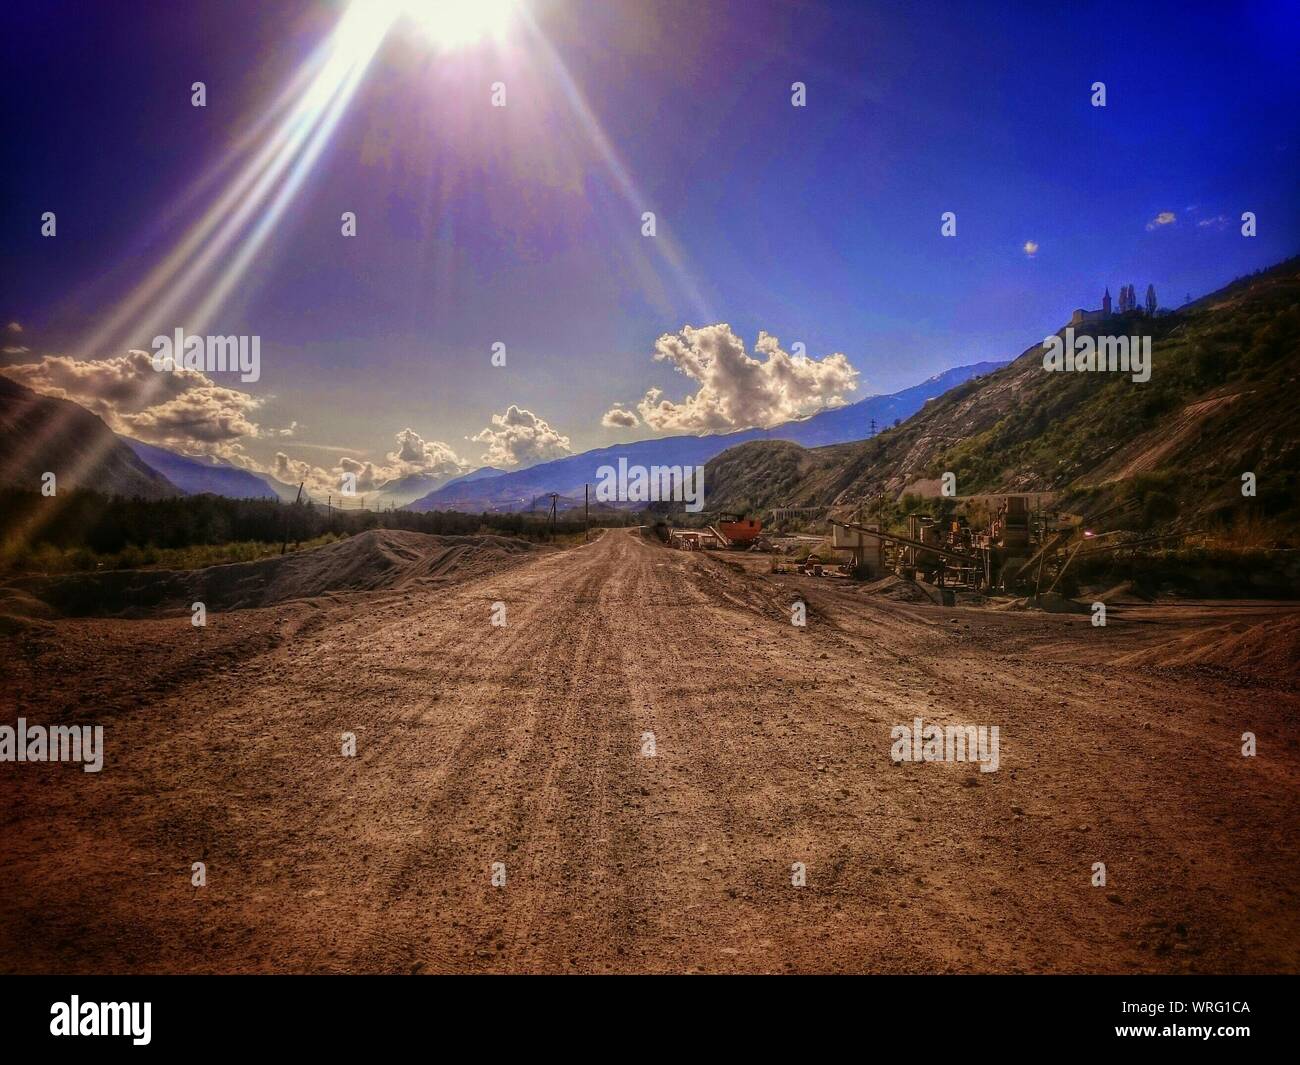 Vista de rayos de sol a través de camino de tierra en el paisaje de montaña Foto de stock